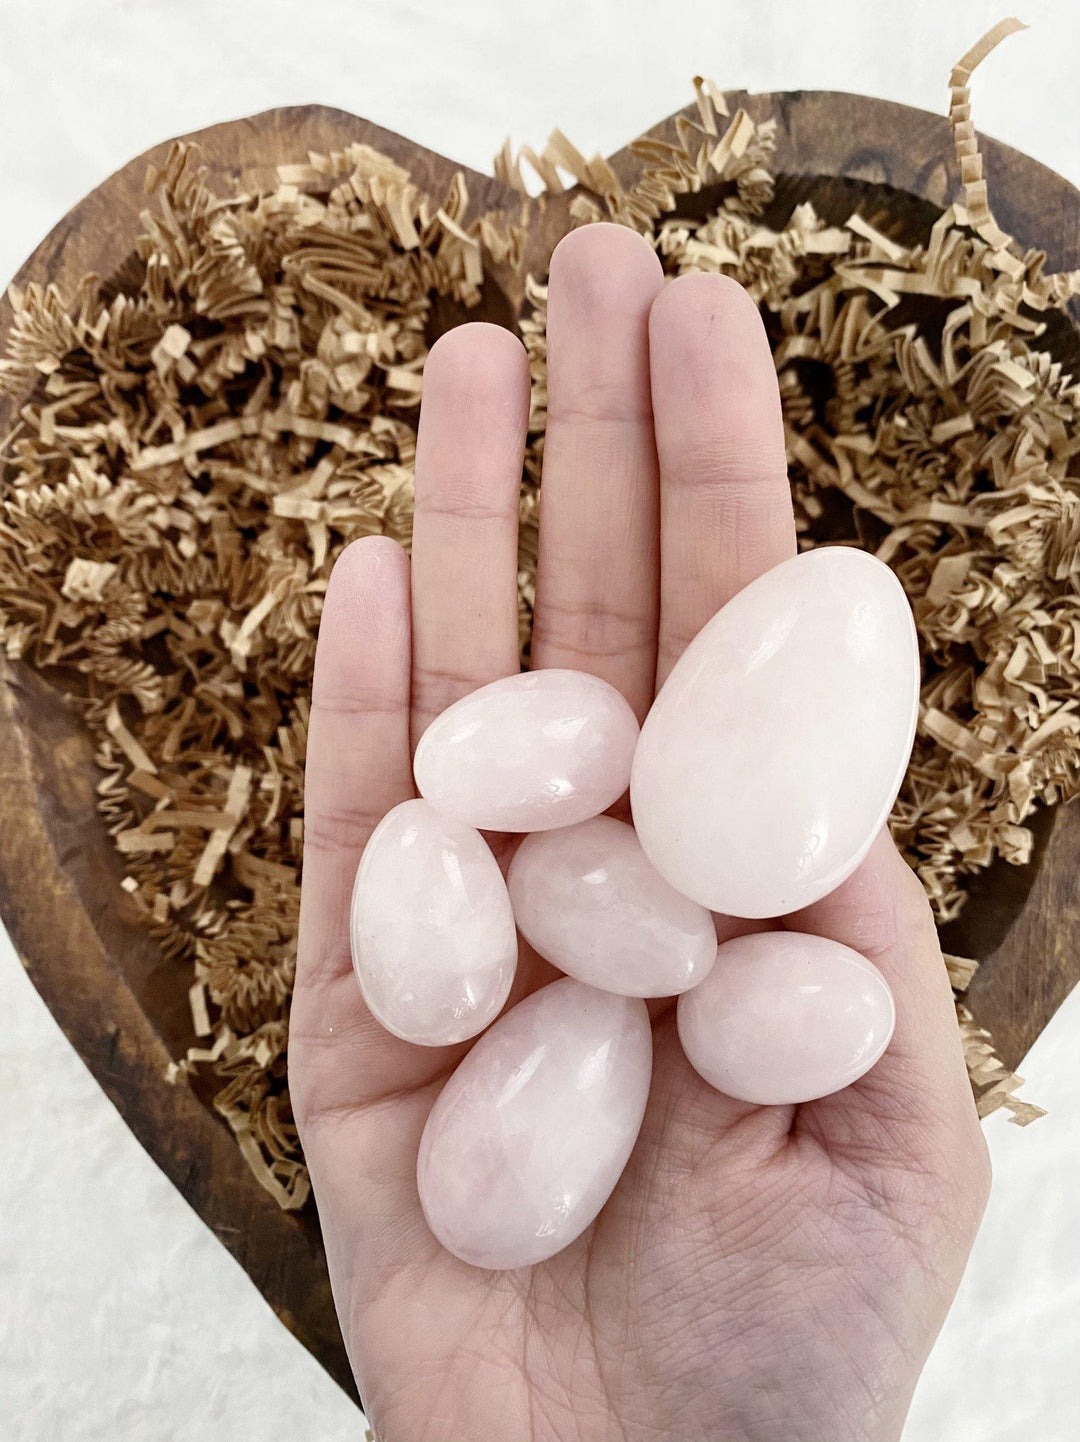 Rose Quartz Eggs - Uncommon Rocks